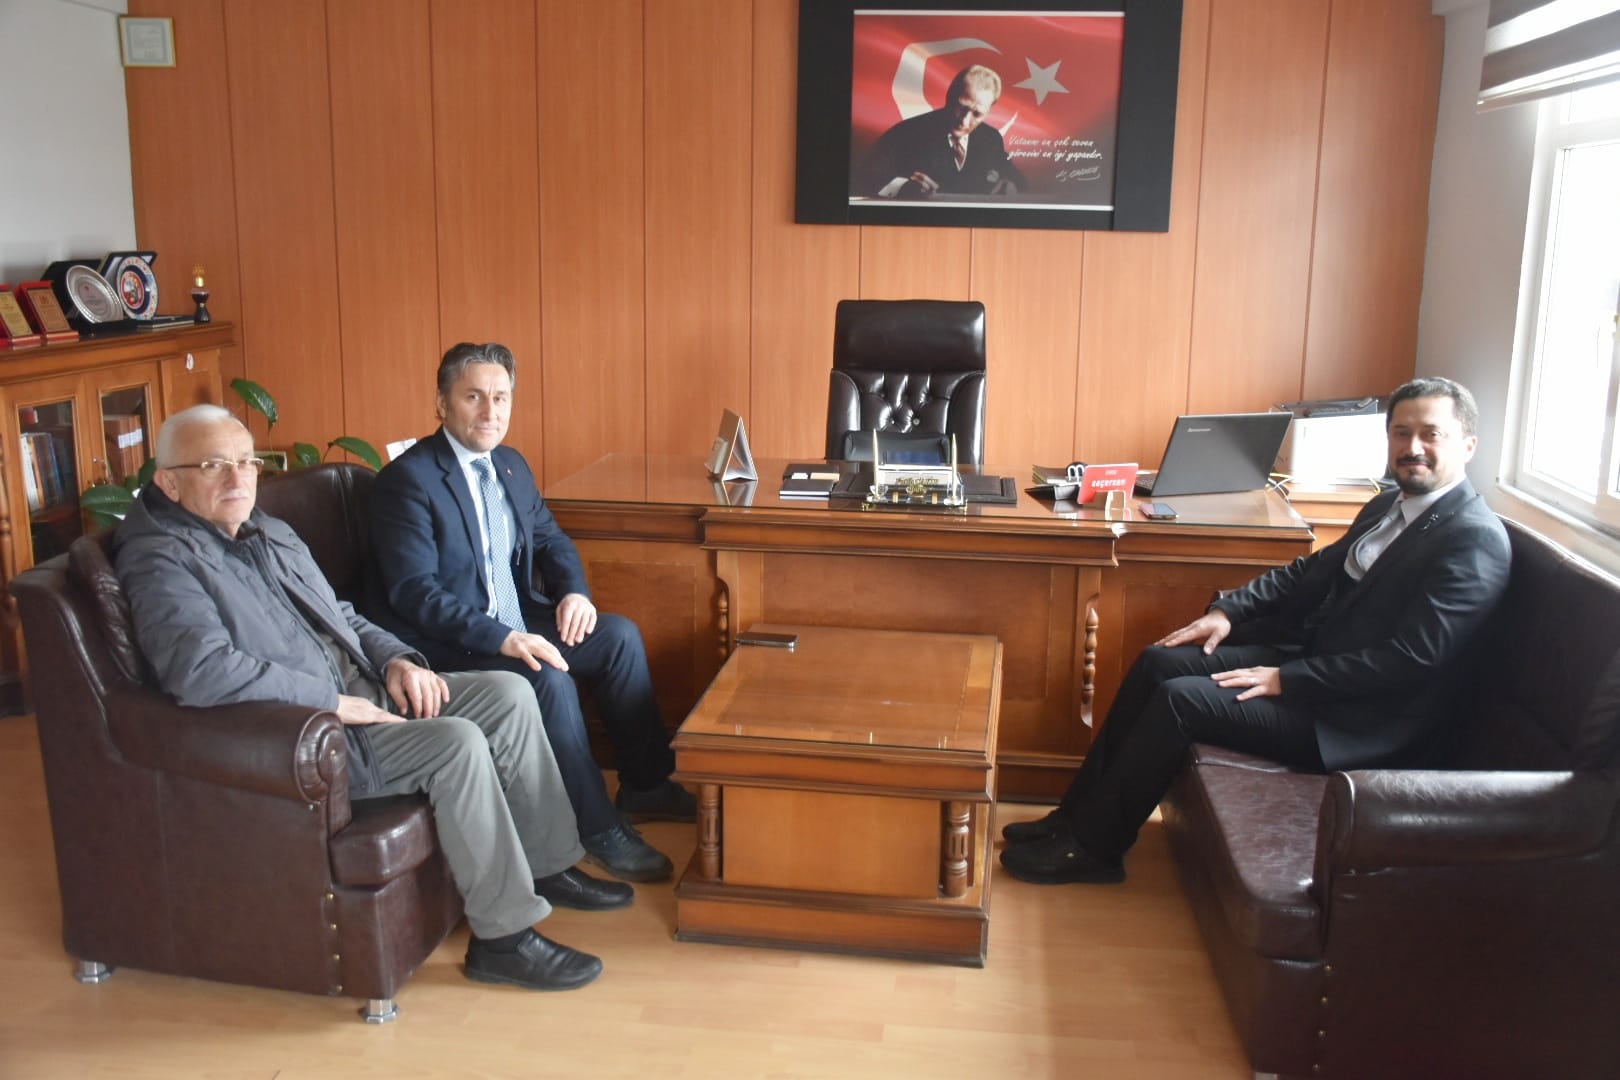 Belediye Başkanımız Hüseyin Kıyma ve Meclis üyemiz Turan Çakır, Yakakent İlçe Müftüsü olarak atanan Fatih Çakır’a hayırlı olsun ziyaretinde bulunarak görevinde başarılar dilediler.